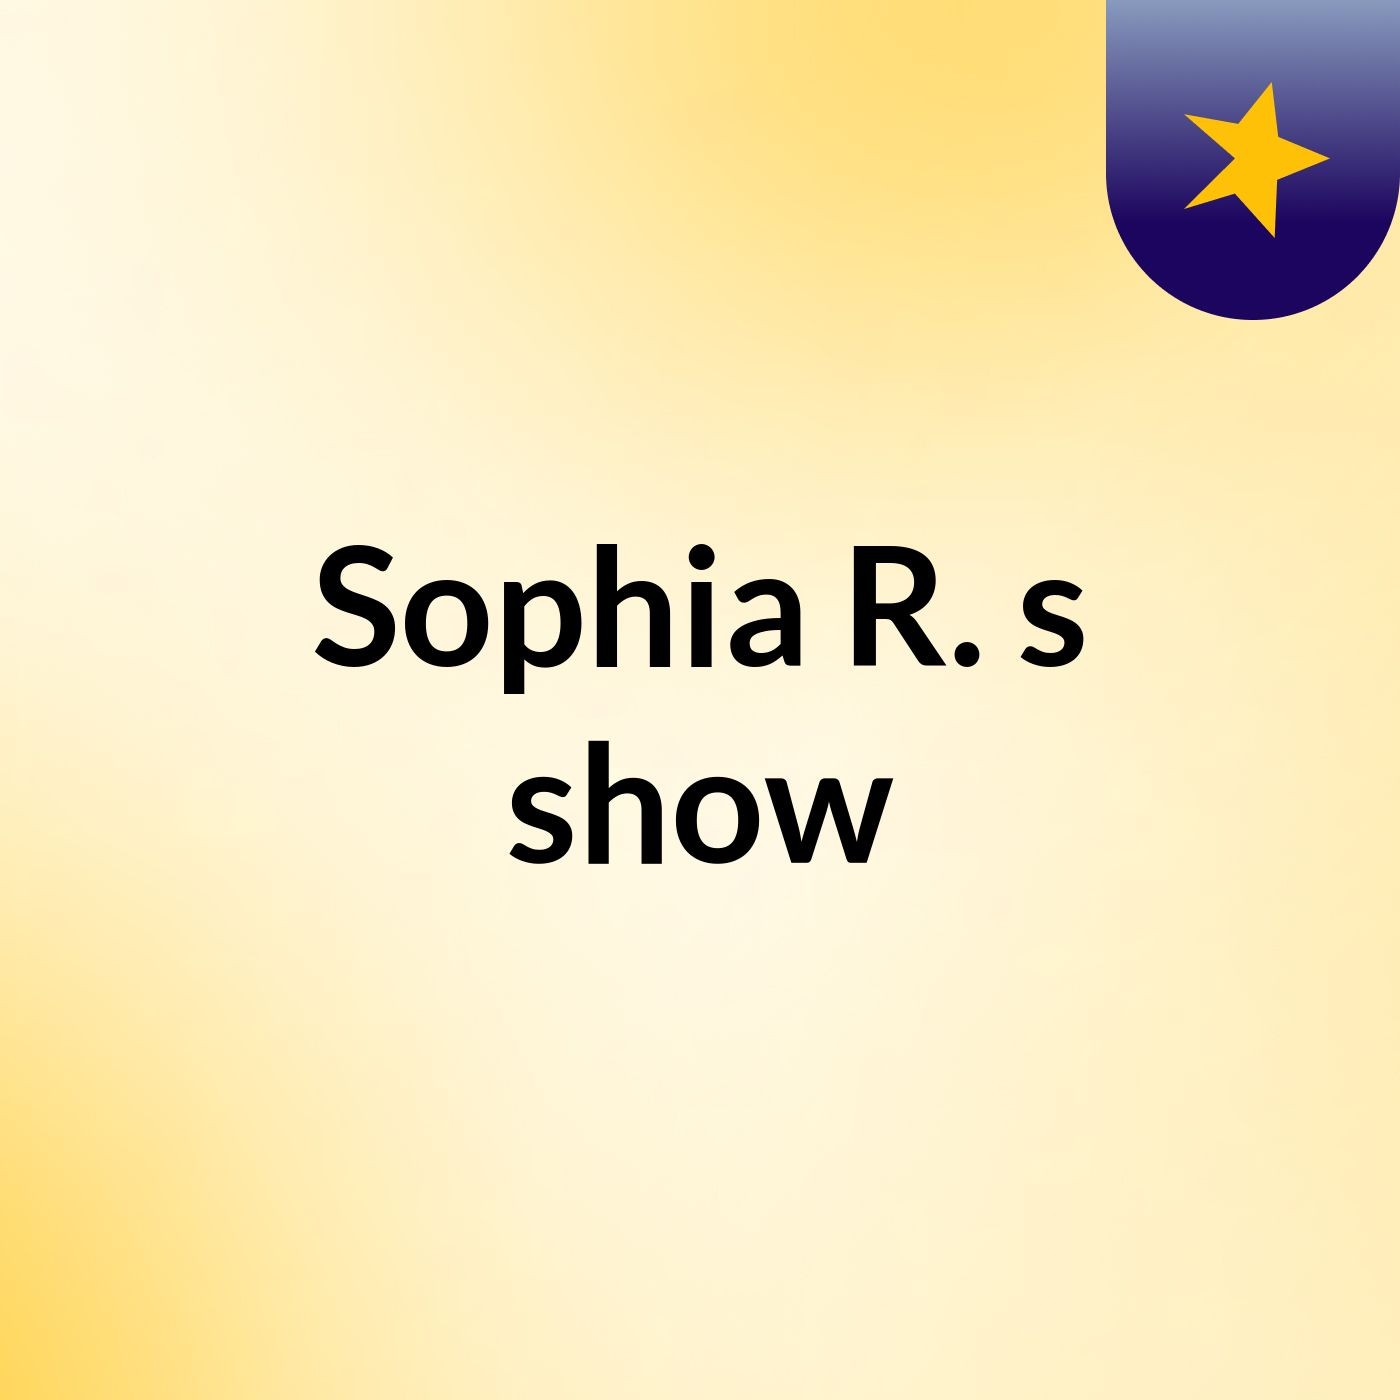 Sophia R.'s show